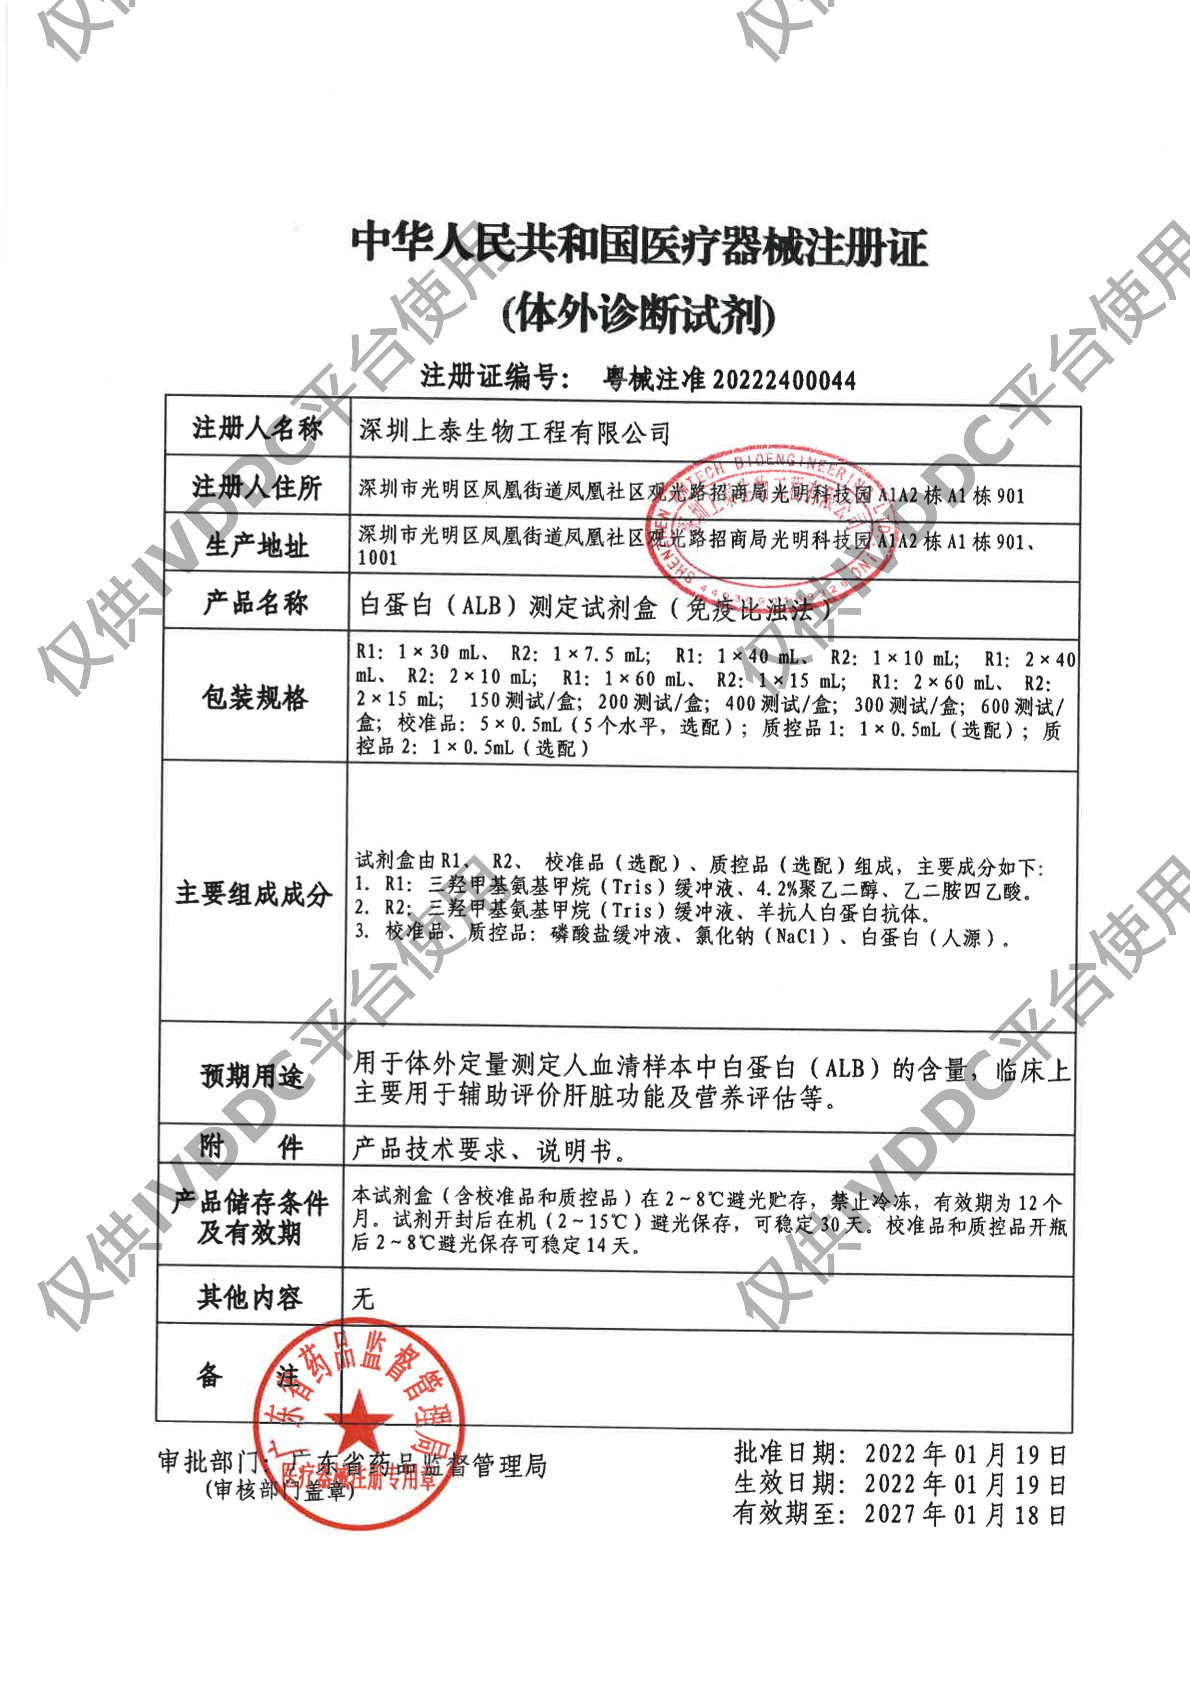 【深圳上泰】白蛋白(ALB)测定试剂盒(免疫比浊法)注册证